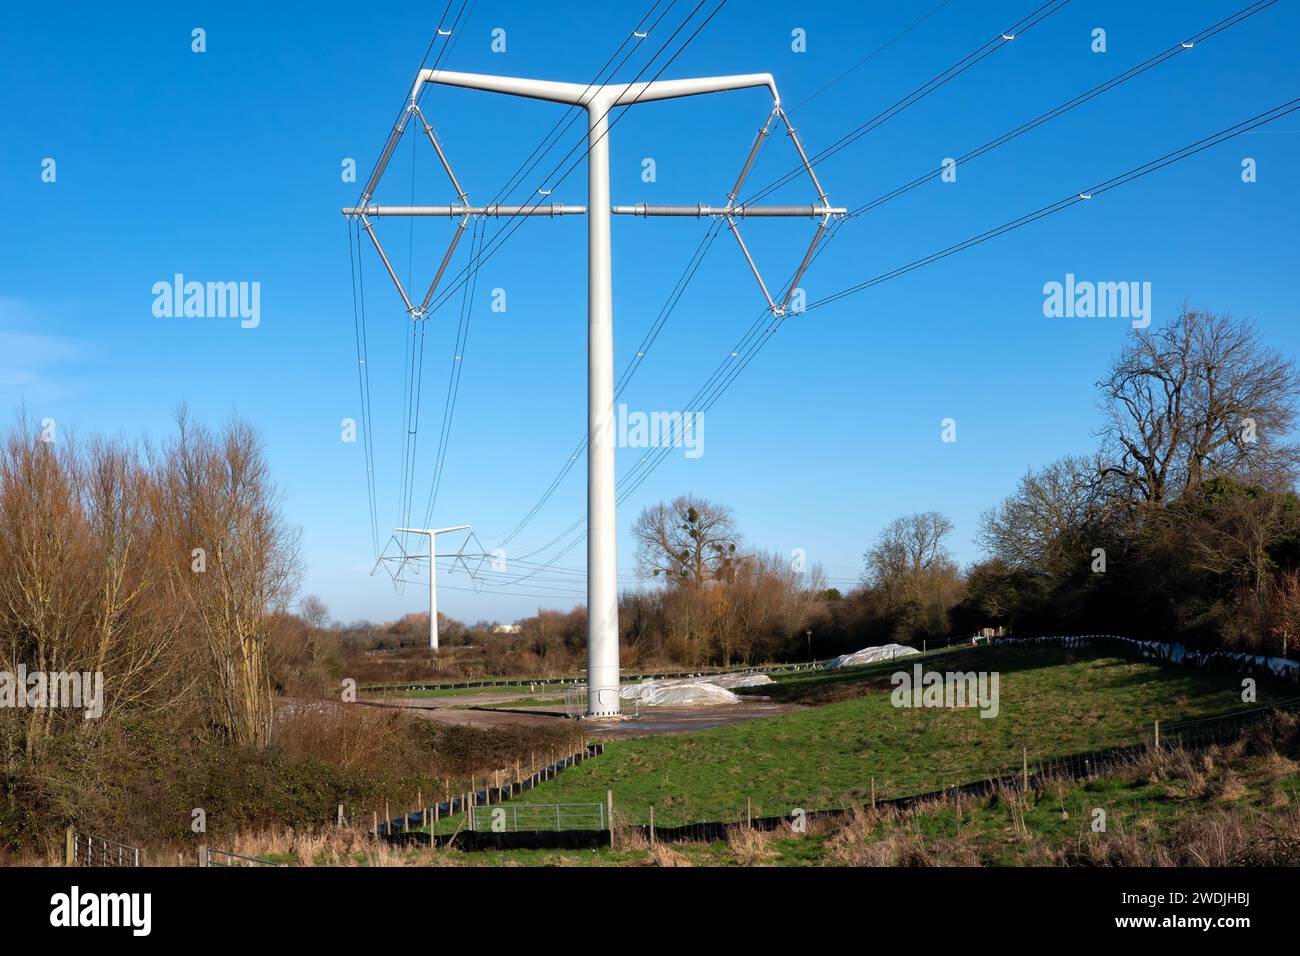 Somerset UK: Nuovi piloni National Grid T che attraversano la campagna del Somerset come parte del nuovo collegamento alla centrale elettrica Hinkley Point C. Foto Stock